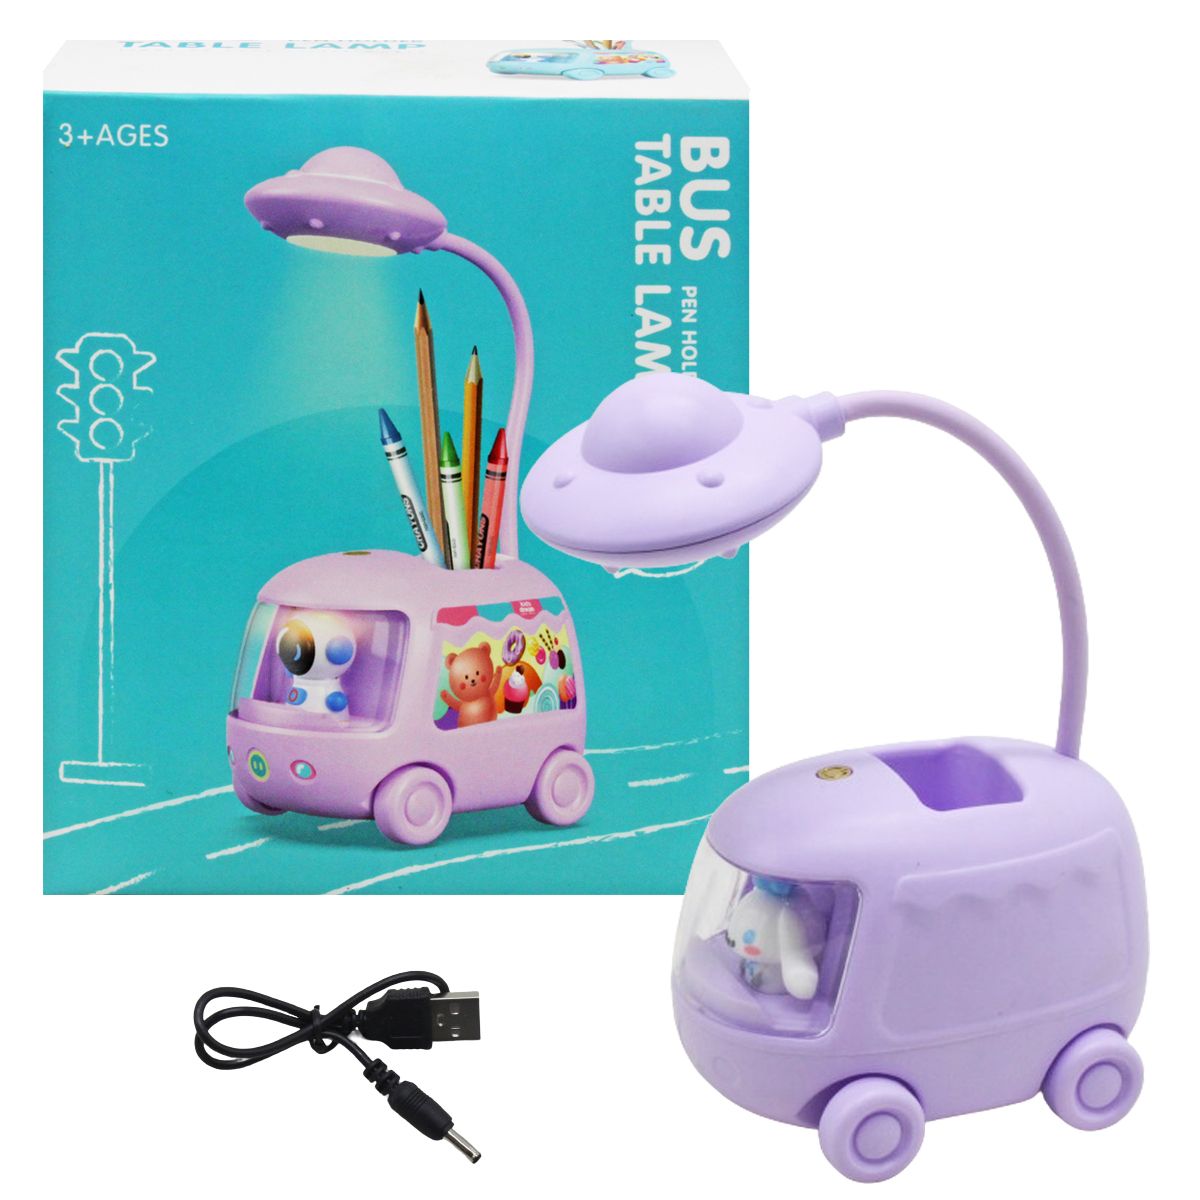 Дитяча настільна лампа "Bus", фіолетова